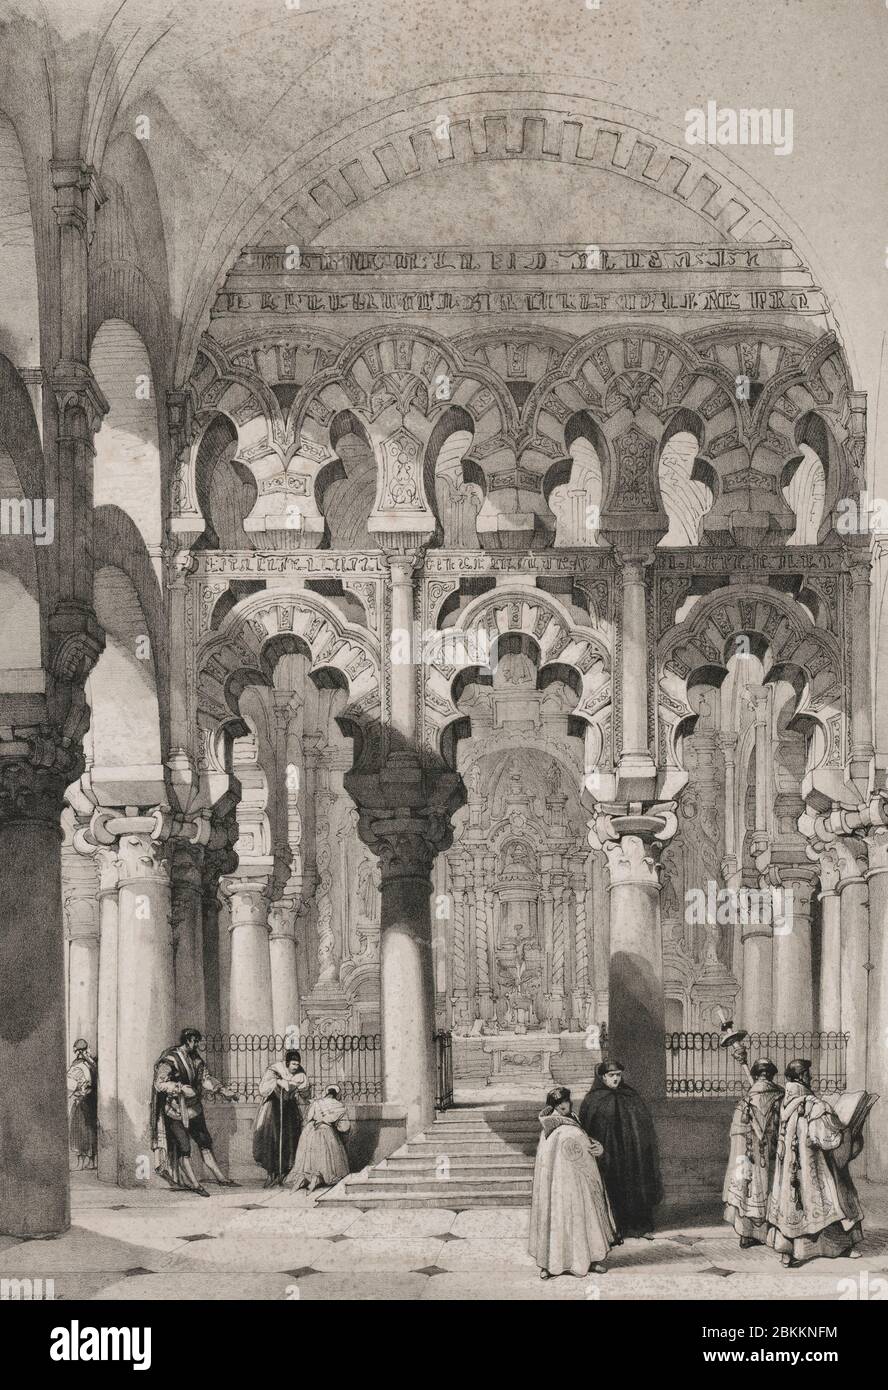 The Mosque, Cordova, Spain, circa 1837 Stock Photo